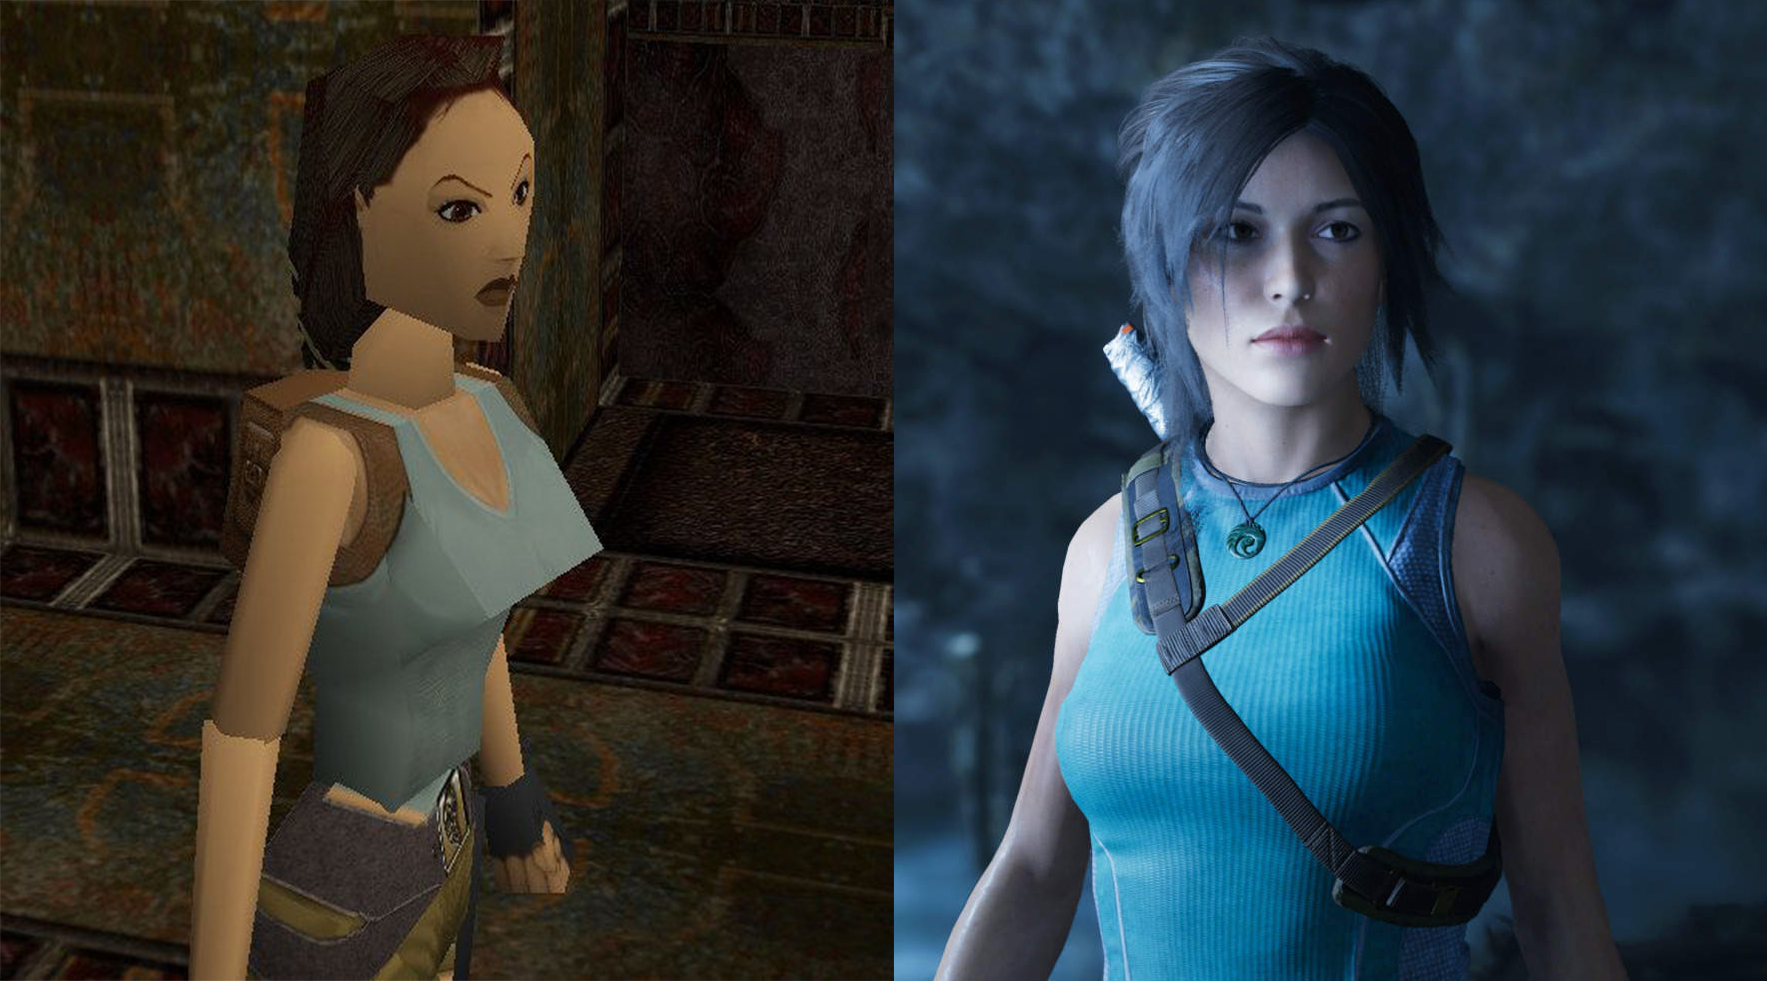 2. Lara Croft.